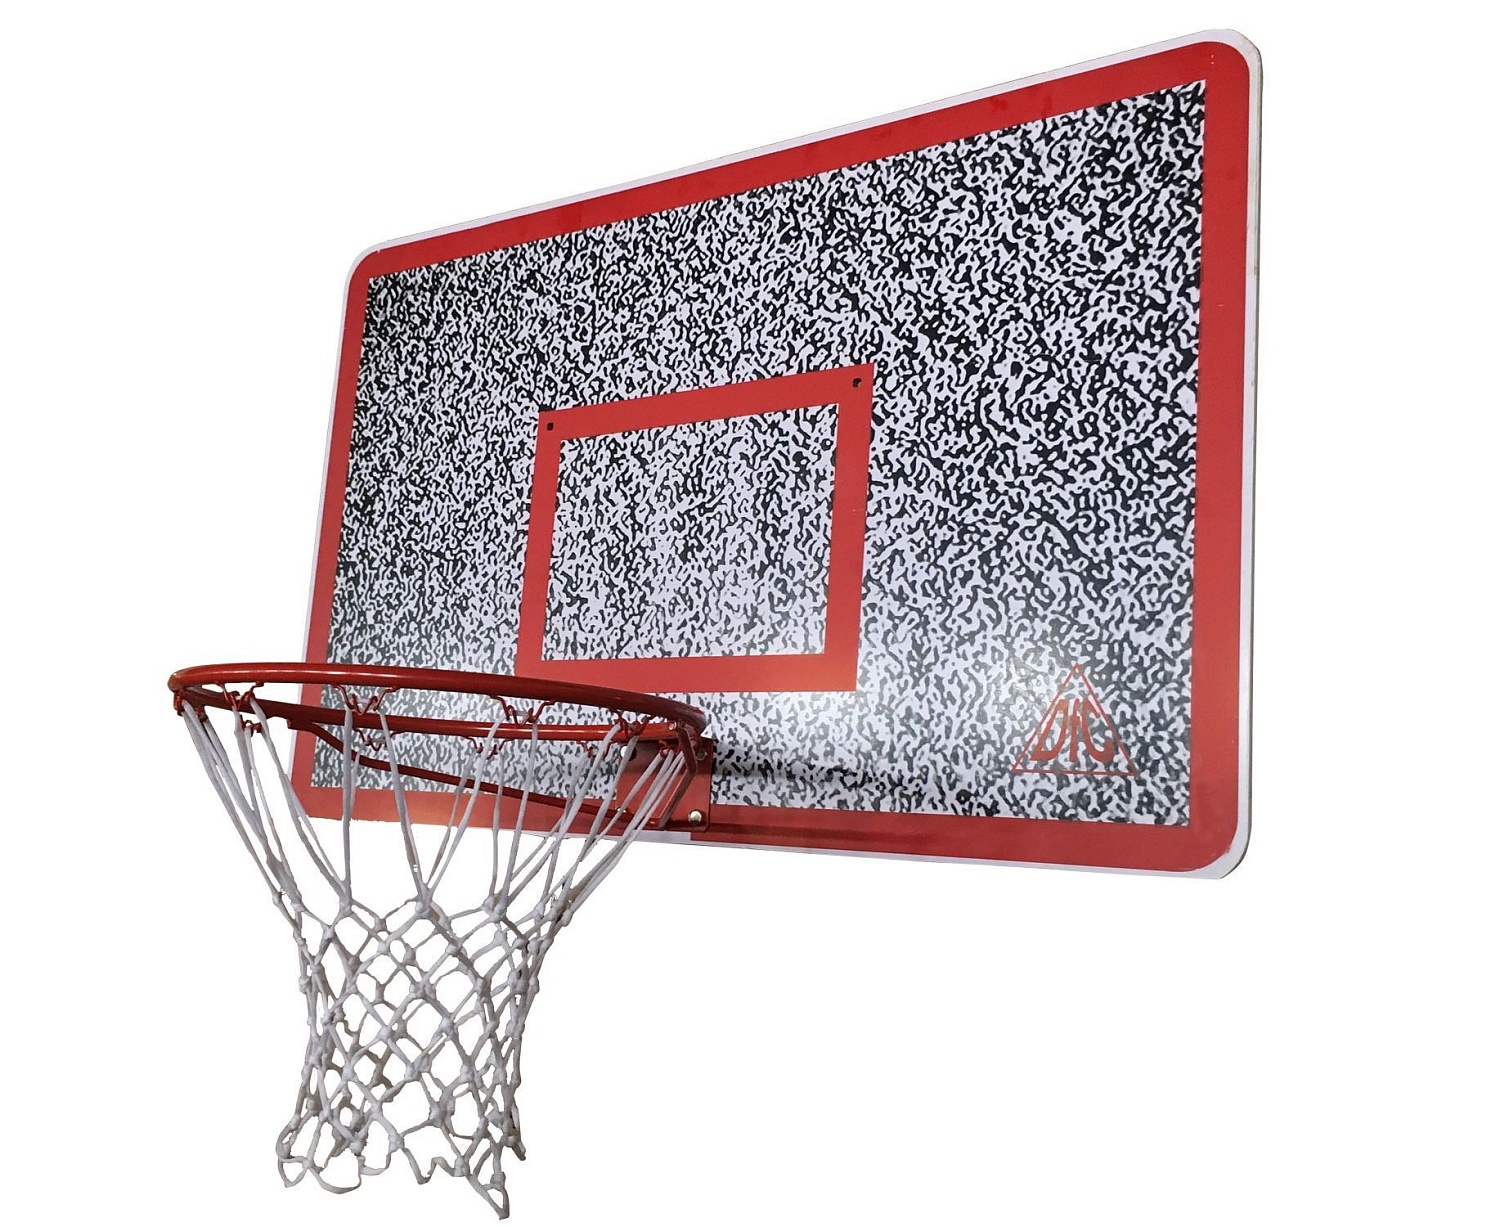 Баскетбольный щит DFC BOARD50M 122x80 см мдф (без крепления на стену)